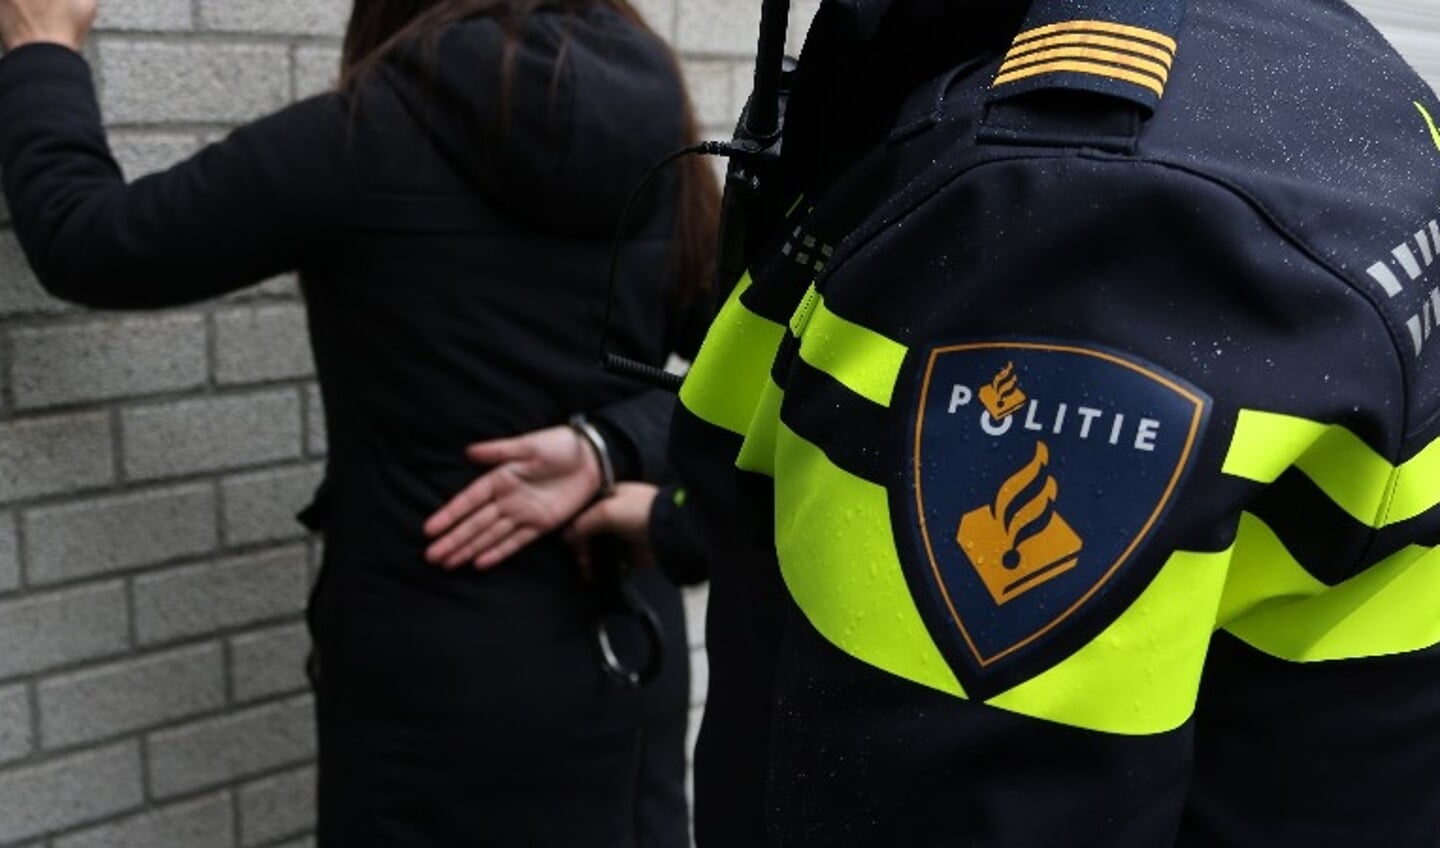 De 21-jarige IJmuidenaar is aangehouden op verdenking van handel in harddrugs na een anonieme tip.